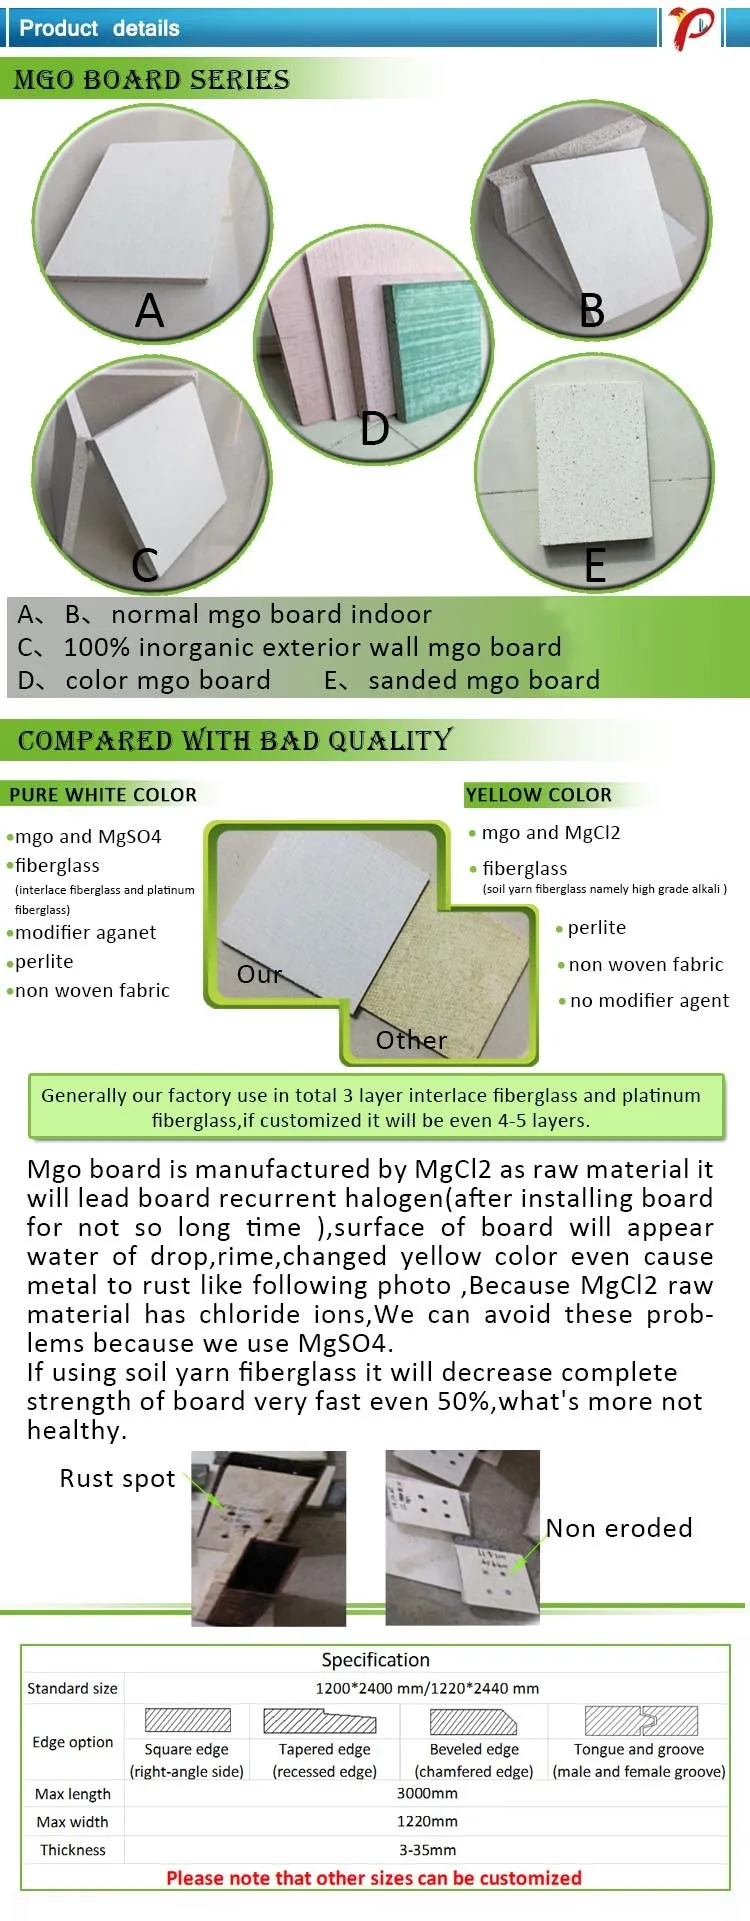 mgo board comparison